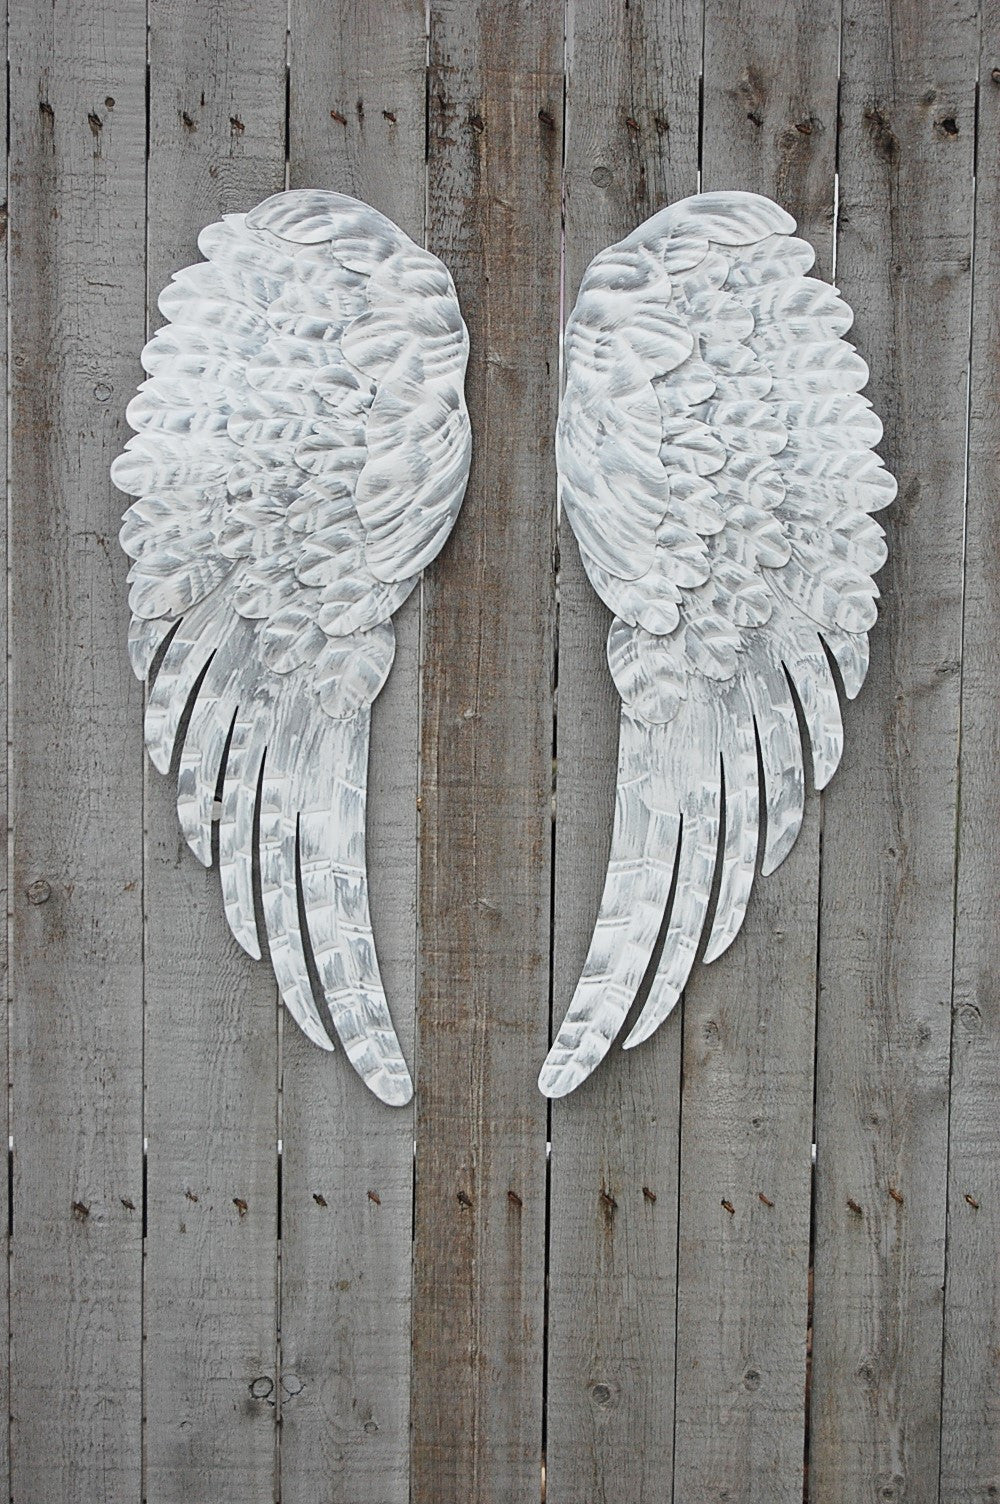 open angel wing drawings